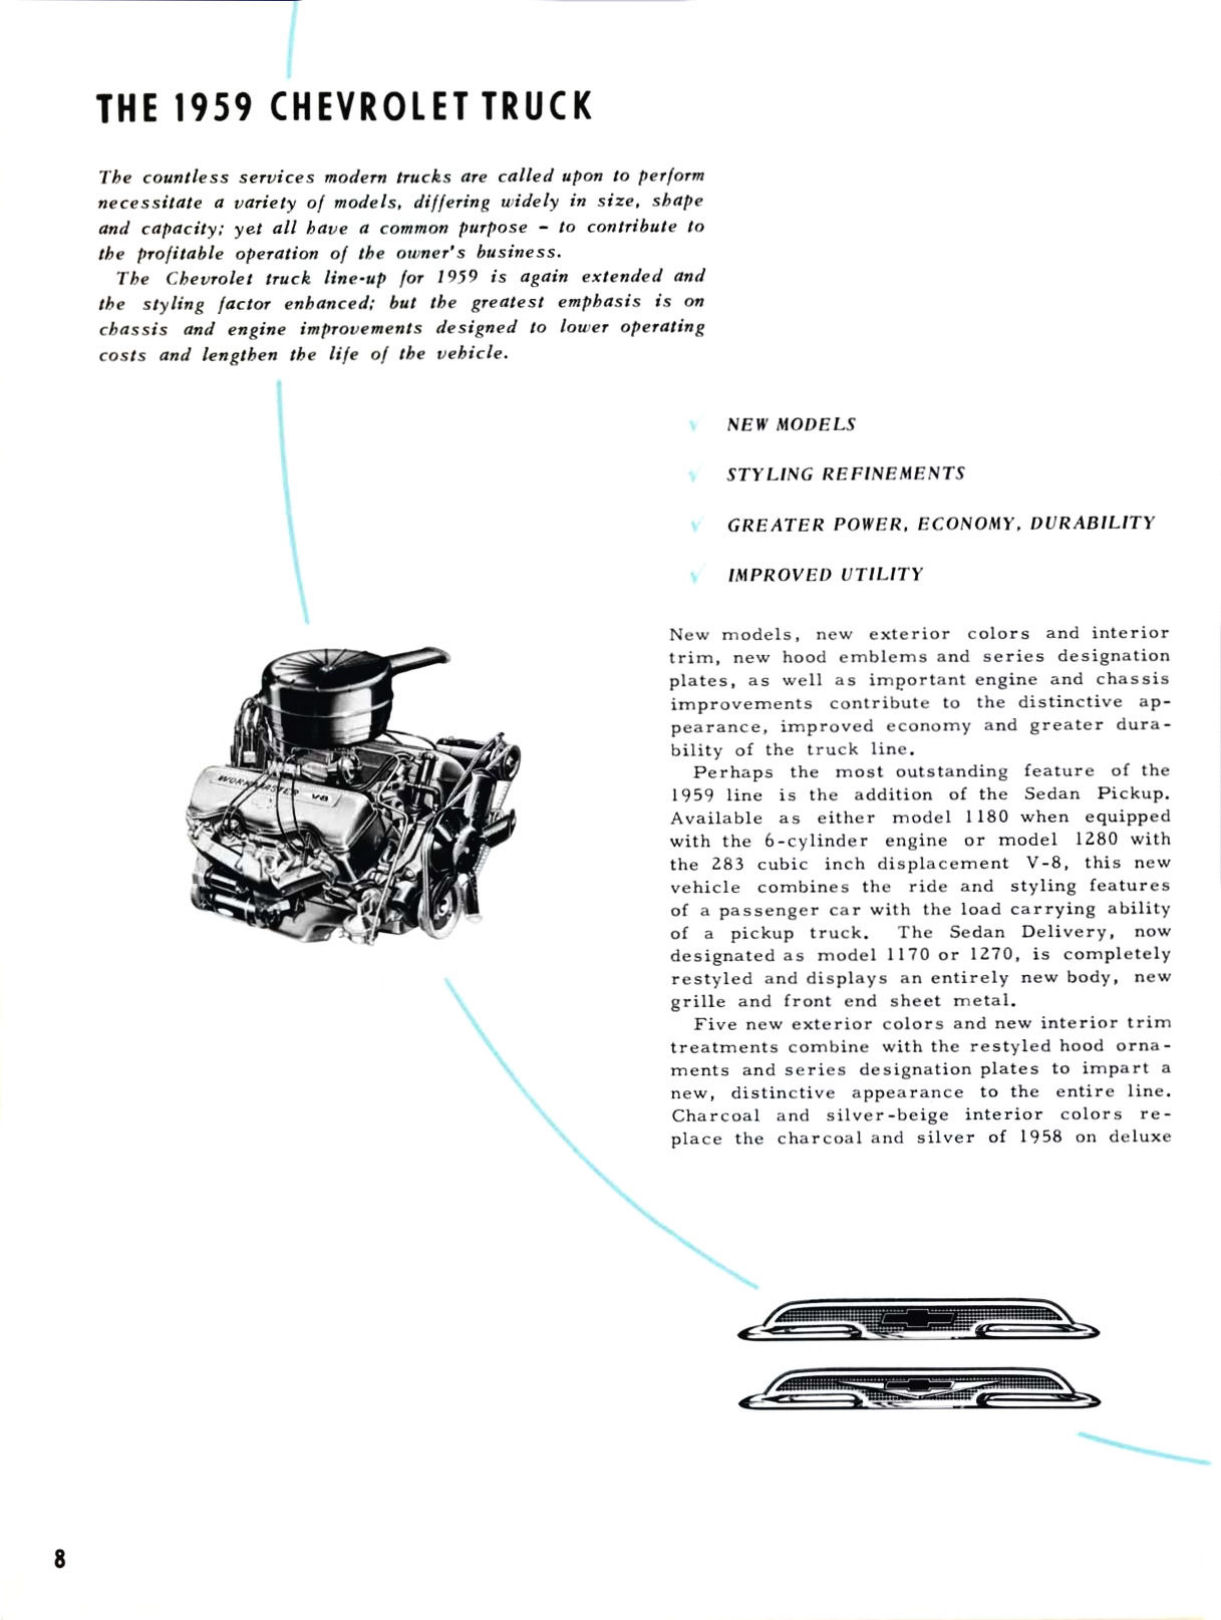 1959 Chevrolet Truck Engineering Features-08